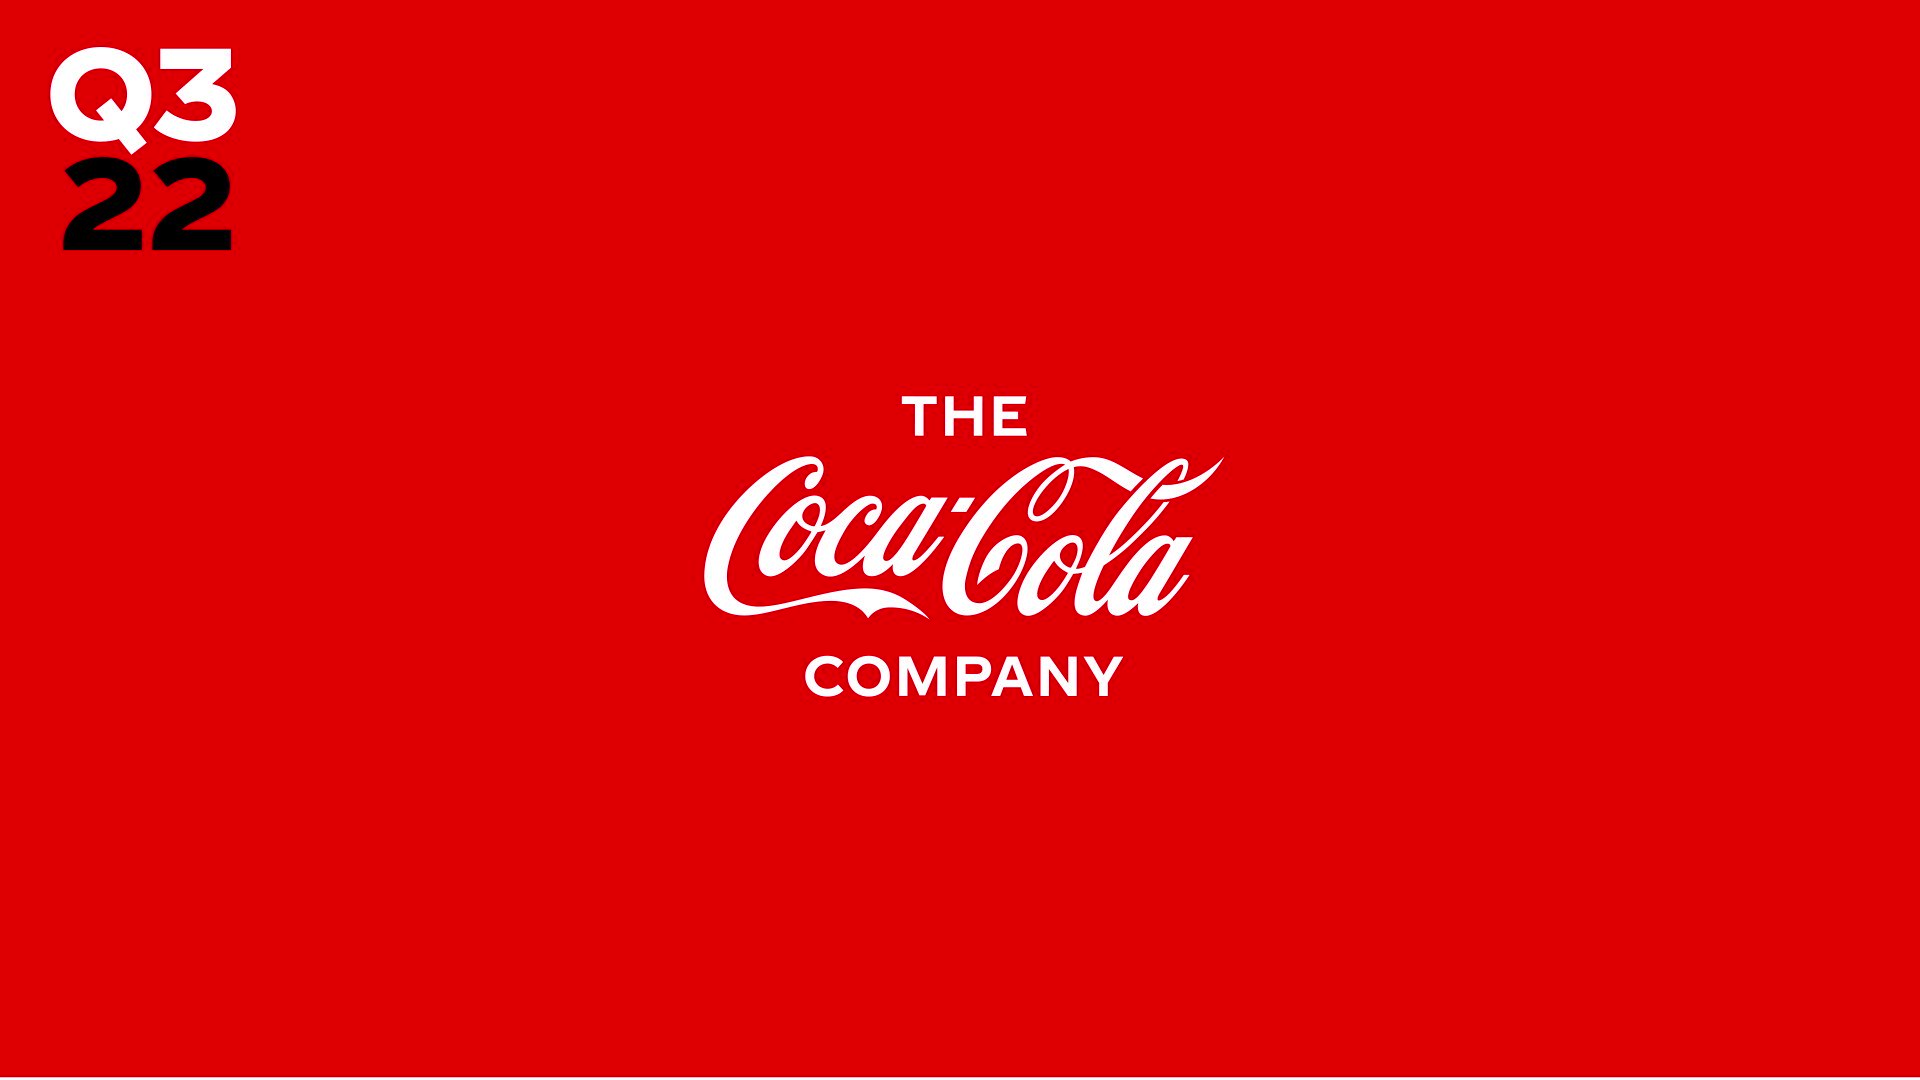 The Coca-Cola Co. (@CocaColaCo) / X